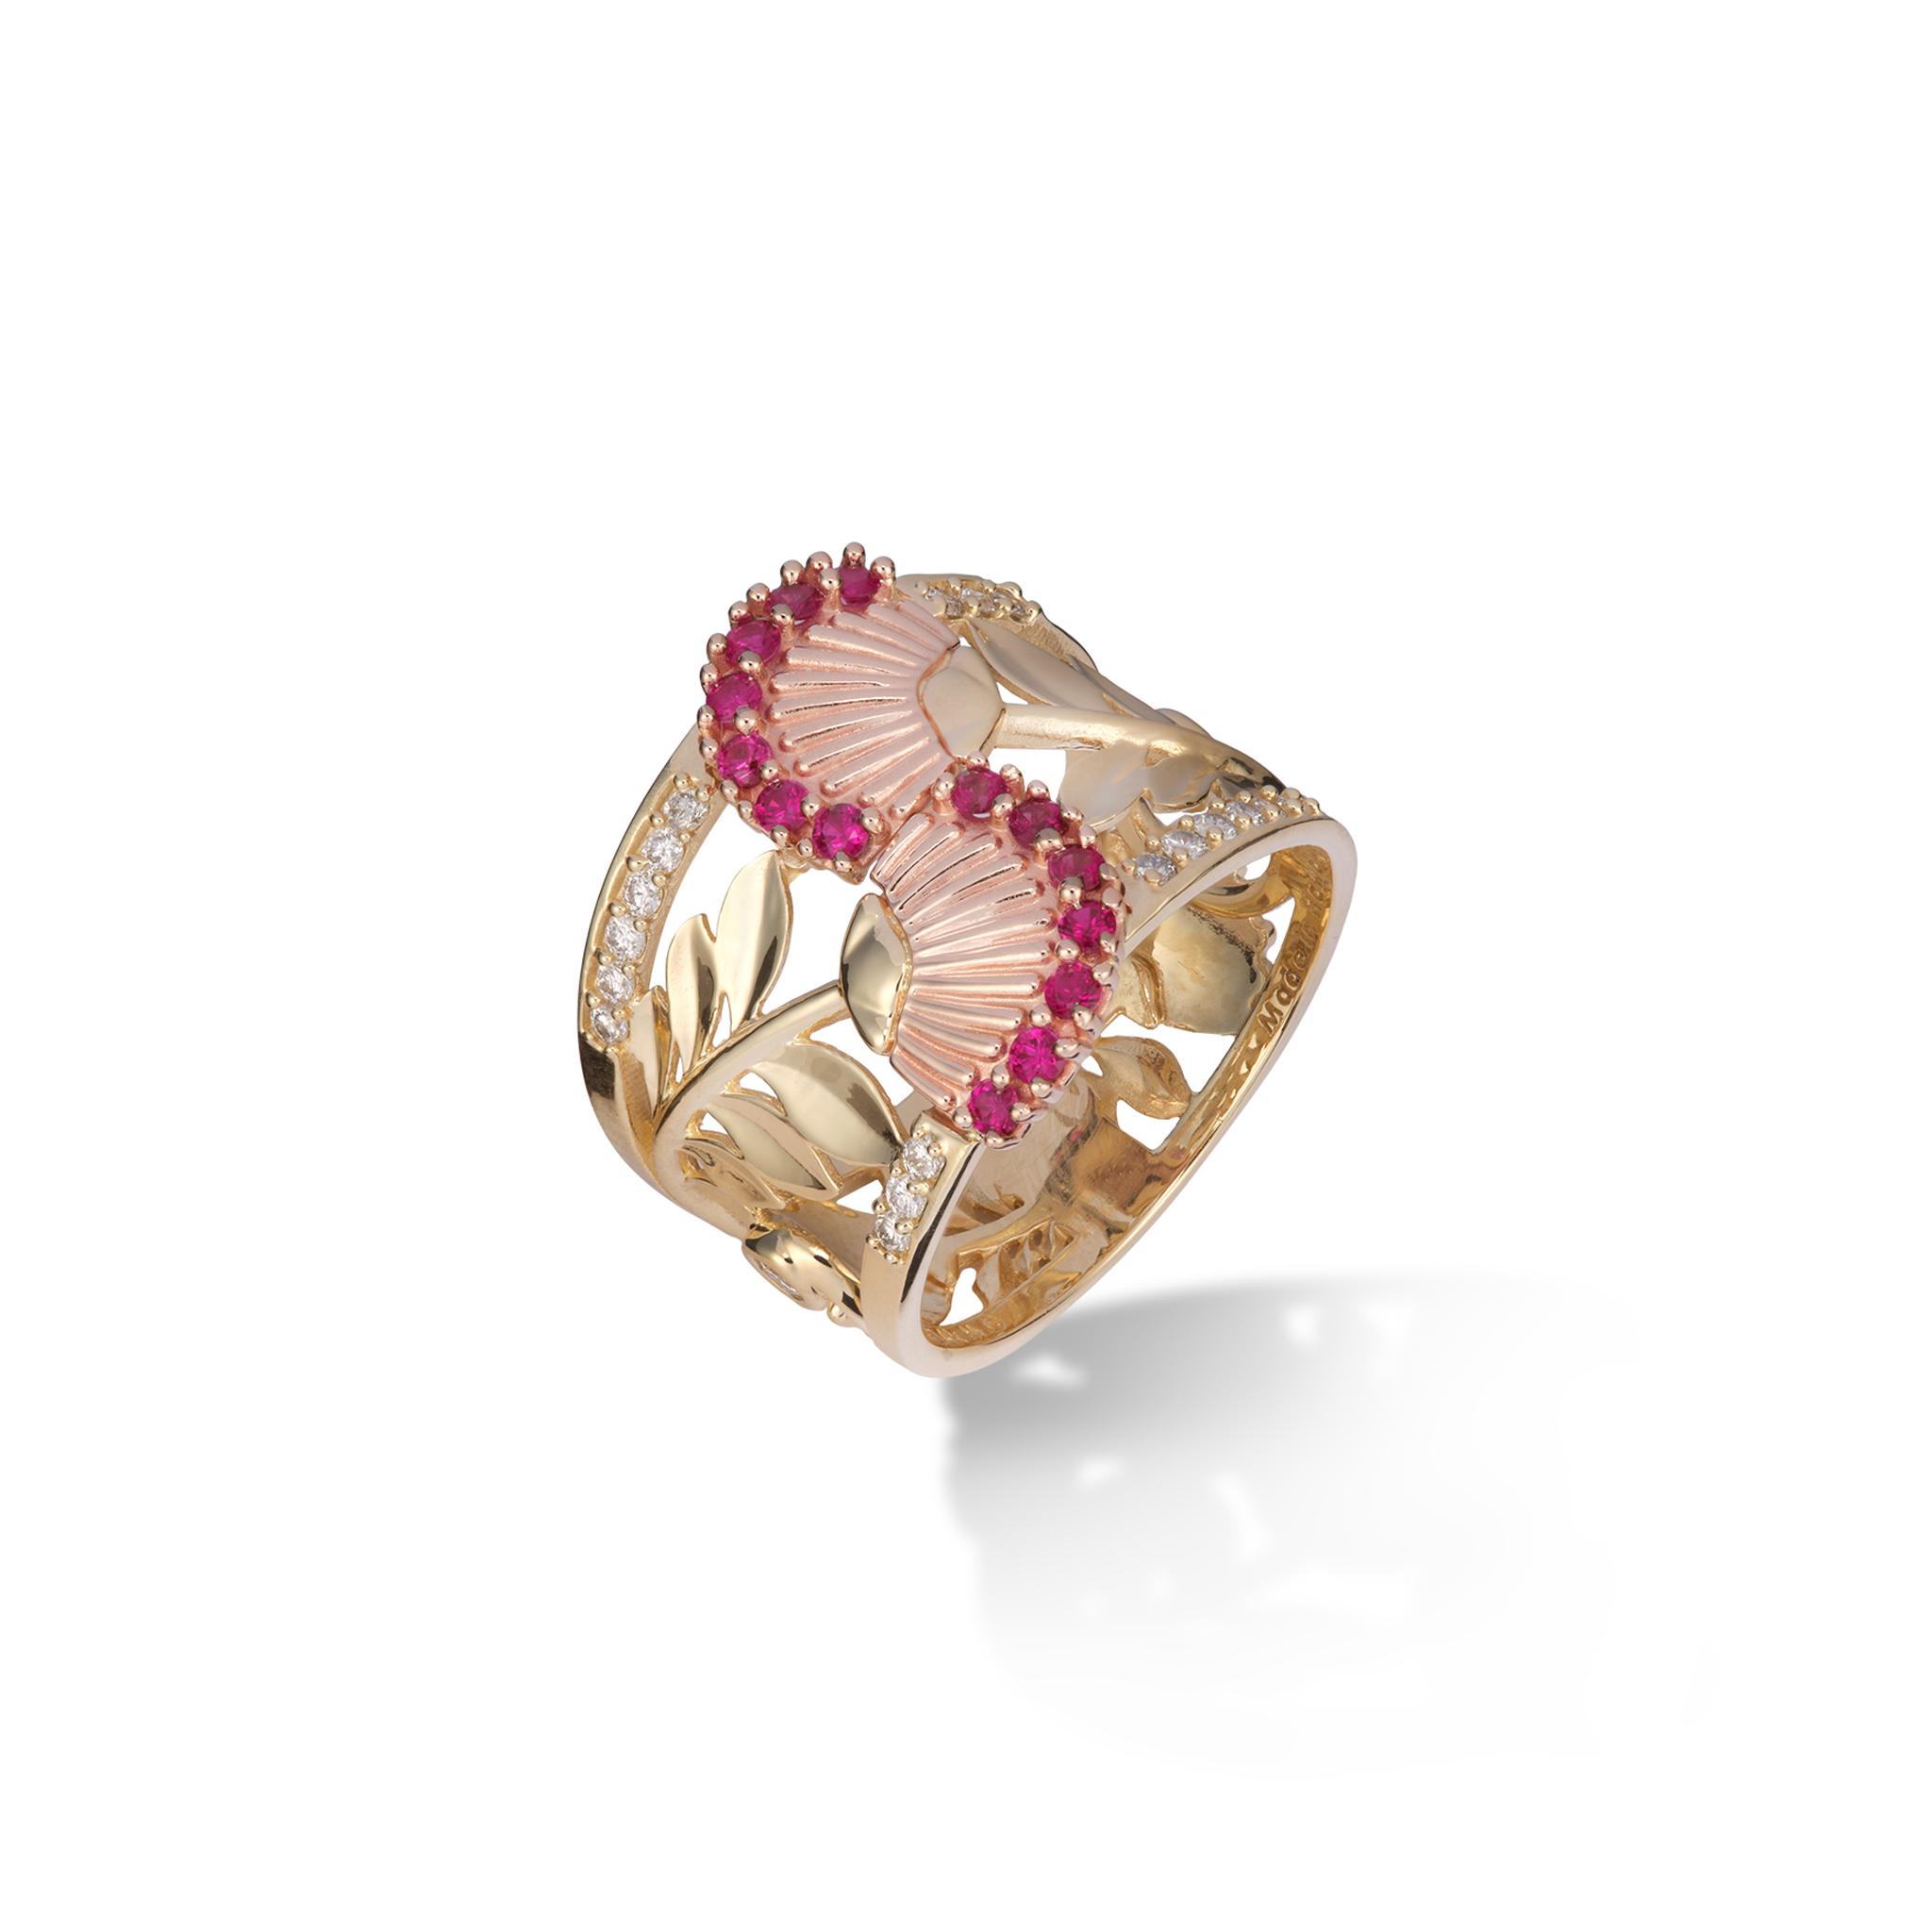 Ohia Lehua Rubinring in zweifarbigem Gold mit Diamanten